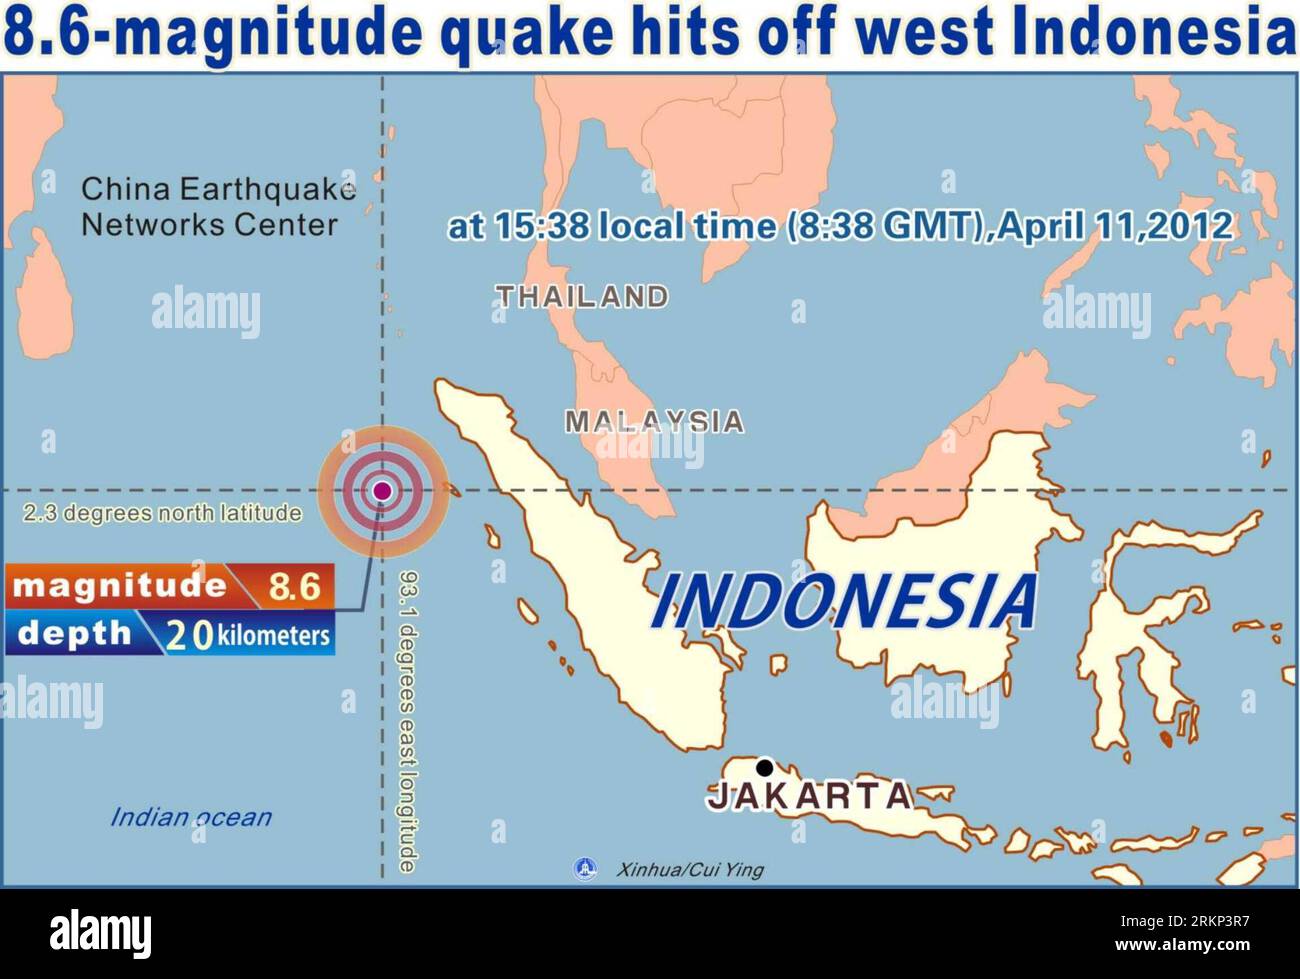 Bildnummer : 57886556 Datum : 11.04.2012 Copyright : imago/Xinhua (120411) -- PÉKIN, 11 avril 2012 (Xinhua) -- graphiques montrant un tremblement de terre de 8,6 sur l'échelle de Richter secoué au large de la côte ouest de l'Indonésie à 15:38 heure locale (8:38 GMT), le 11 avril 2012. (Xinhua/Cui Ying) GRAPHIQUES INDONESIA-EARTHQUAKE PUBLICATIONxNOTxINxCHN Gesellschaft Naturkatstrophe Erdbeben Epizentrum Grafik xdp x0x premiumd 2012 quer 57886556 Date 11 04 2012 Copyright Imago XINHUA Pékin avril 11 2012 XINHUA Graphics montre un tremblement de terre mesurant 8 6 SUR l'échelle des juges secoué au large de la côte OUEST d'Indone Banque D'Images